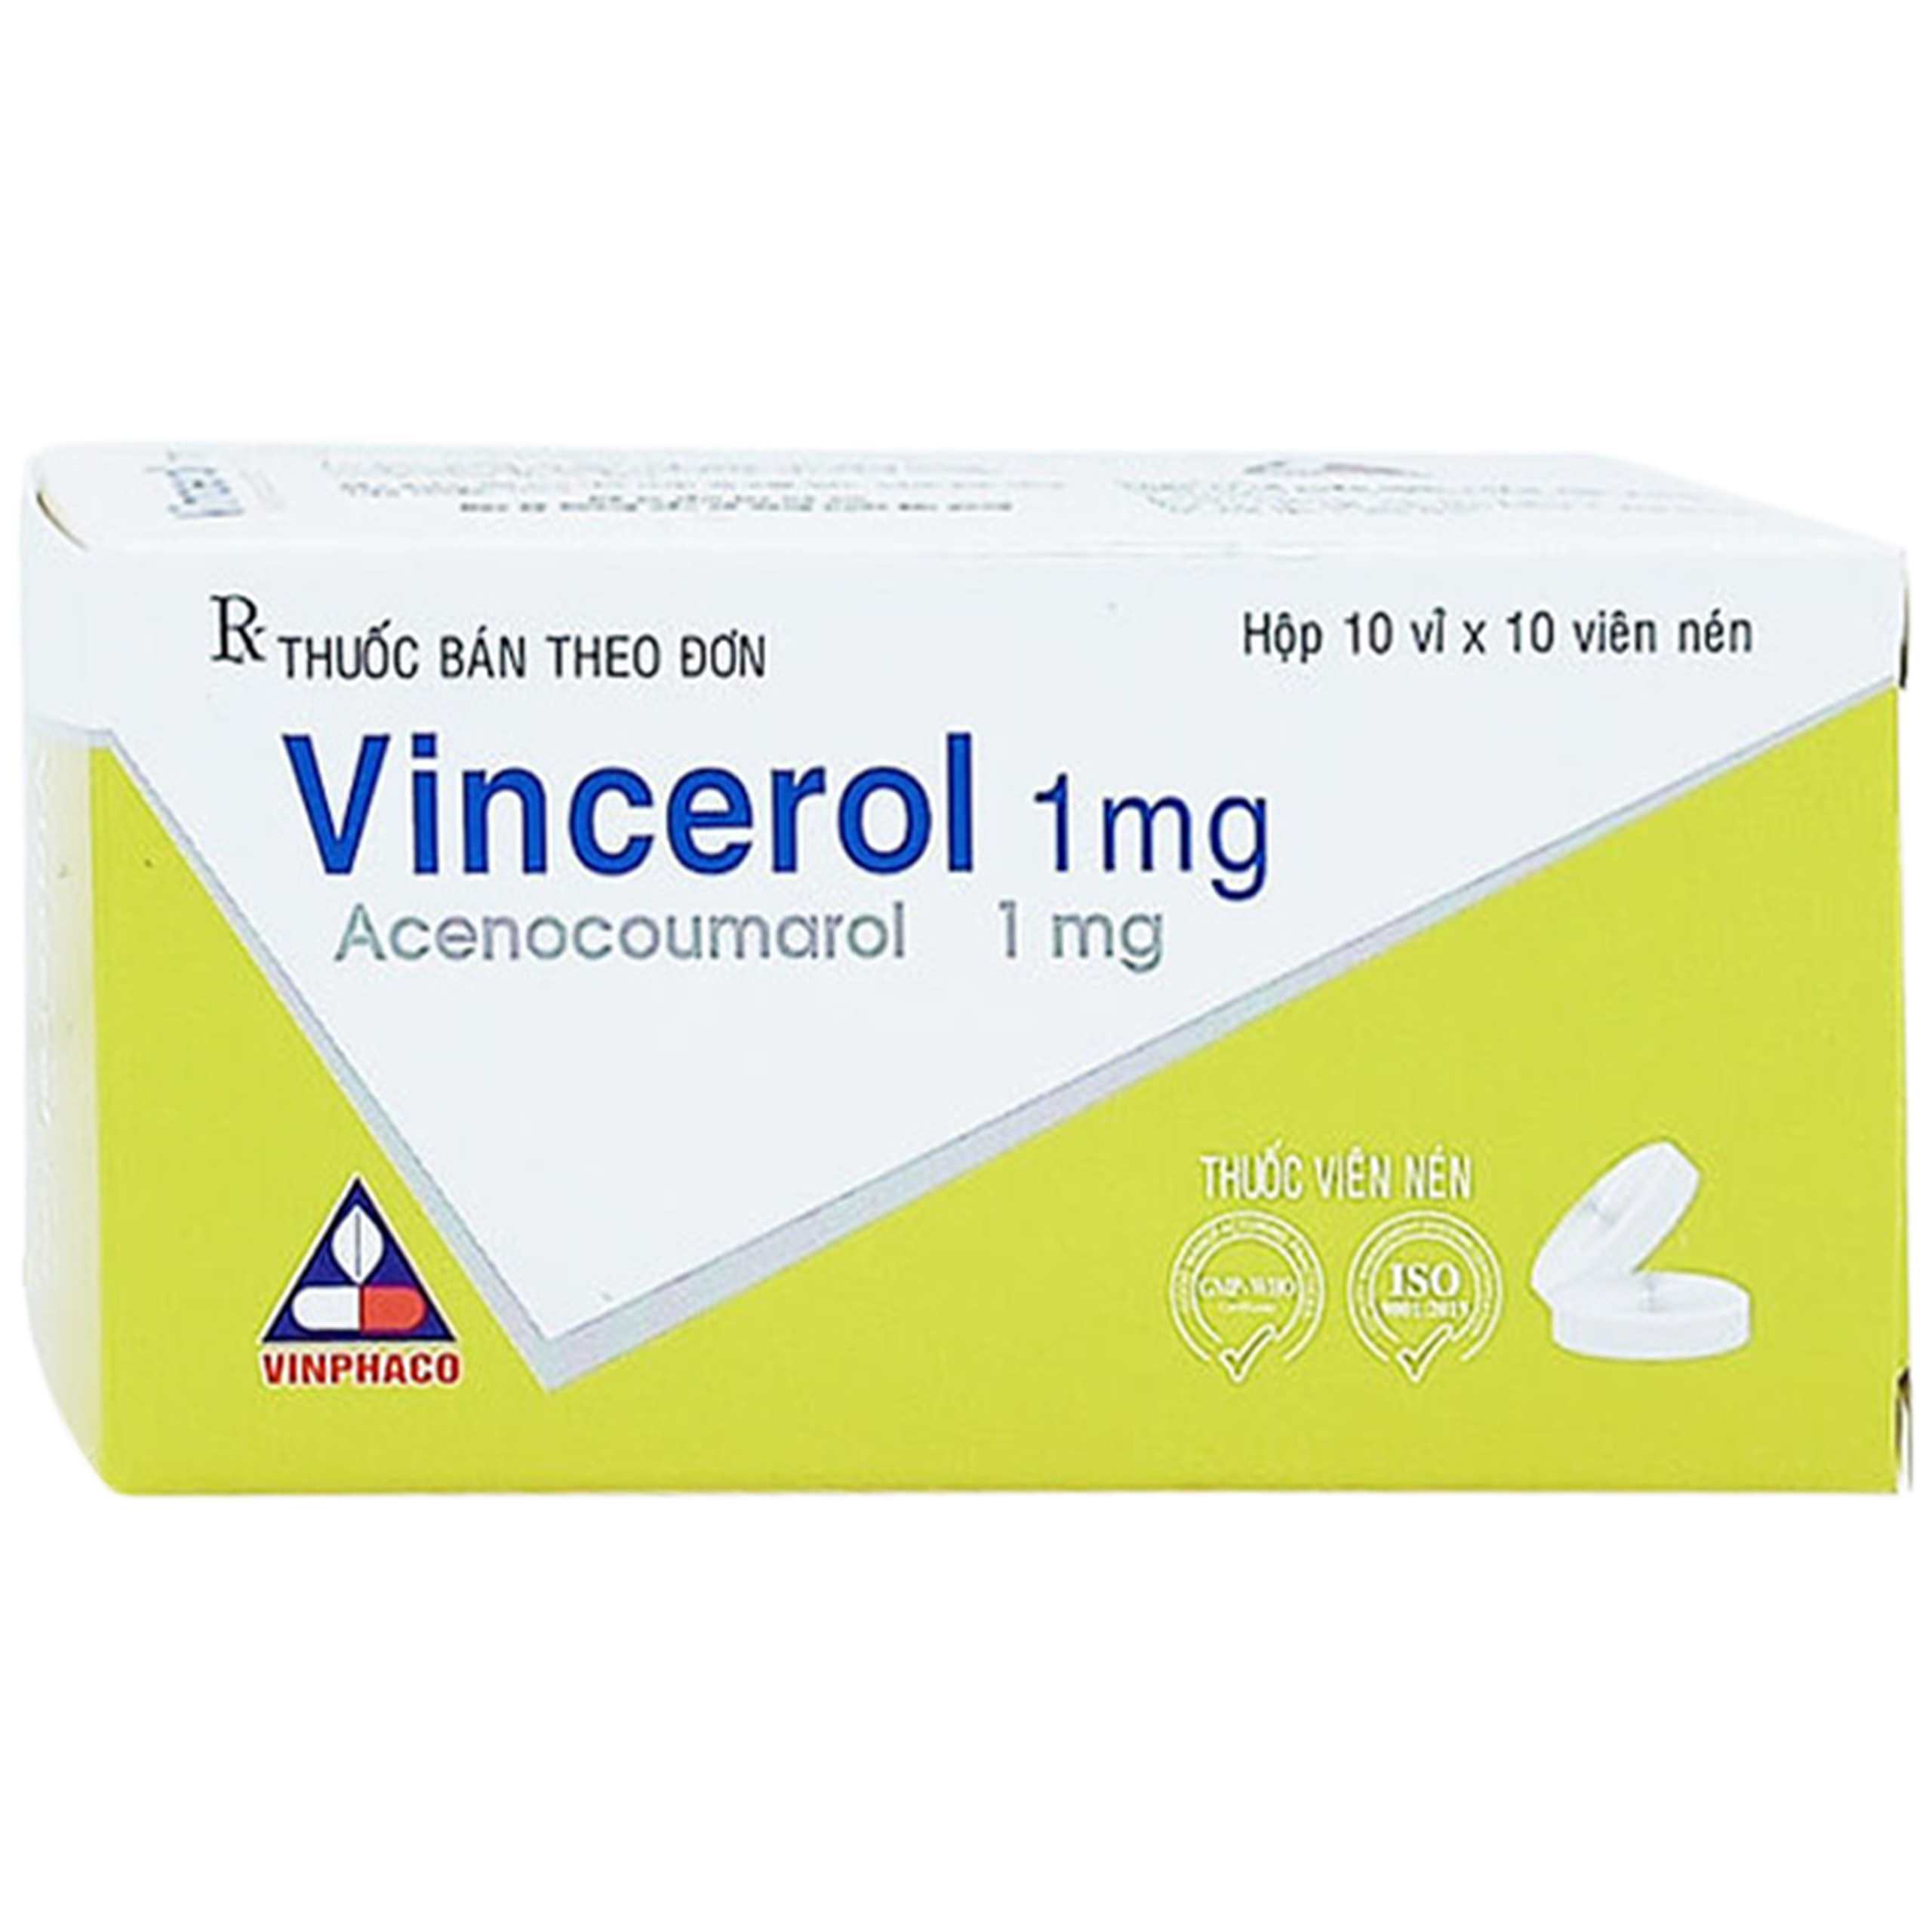 Thuốc Vincerol 1mg Vinphaco dùng trong bệnh tim gây tắc mạch, nhồi máu cơ tim (10 vỉ x 10 viên)